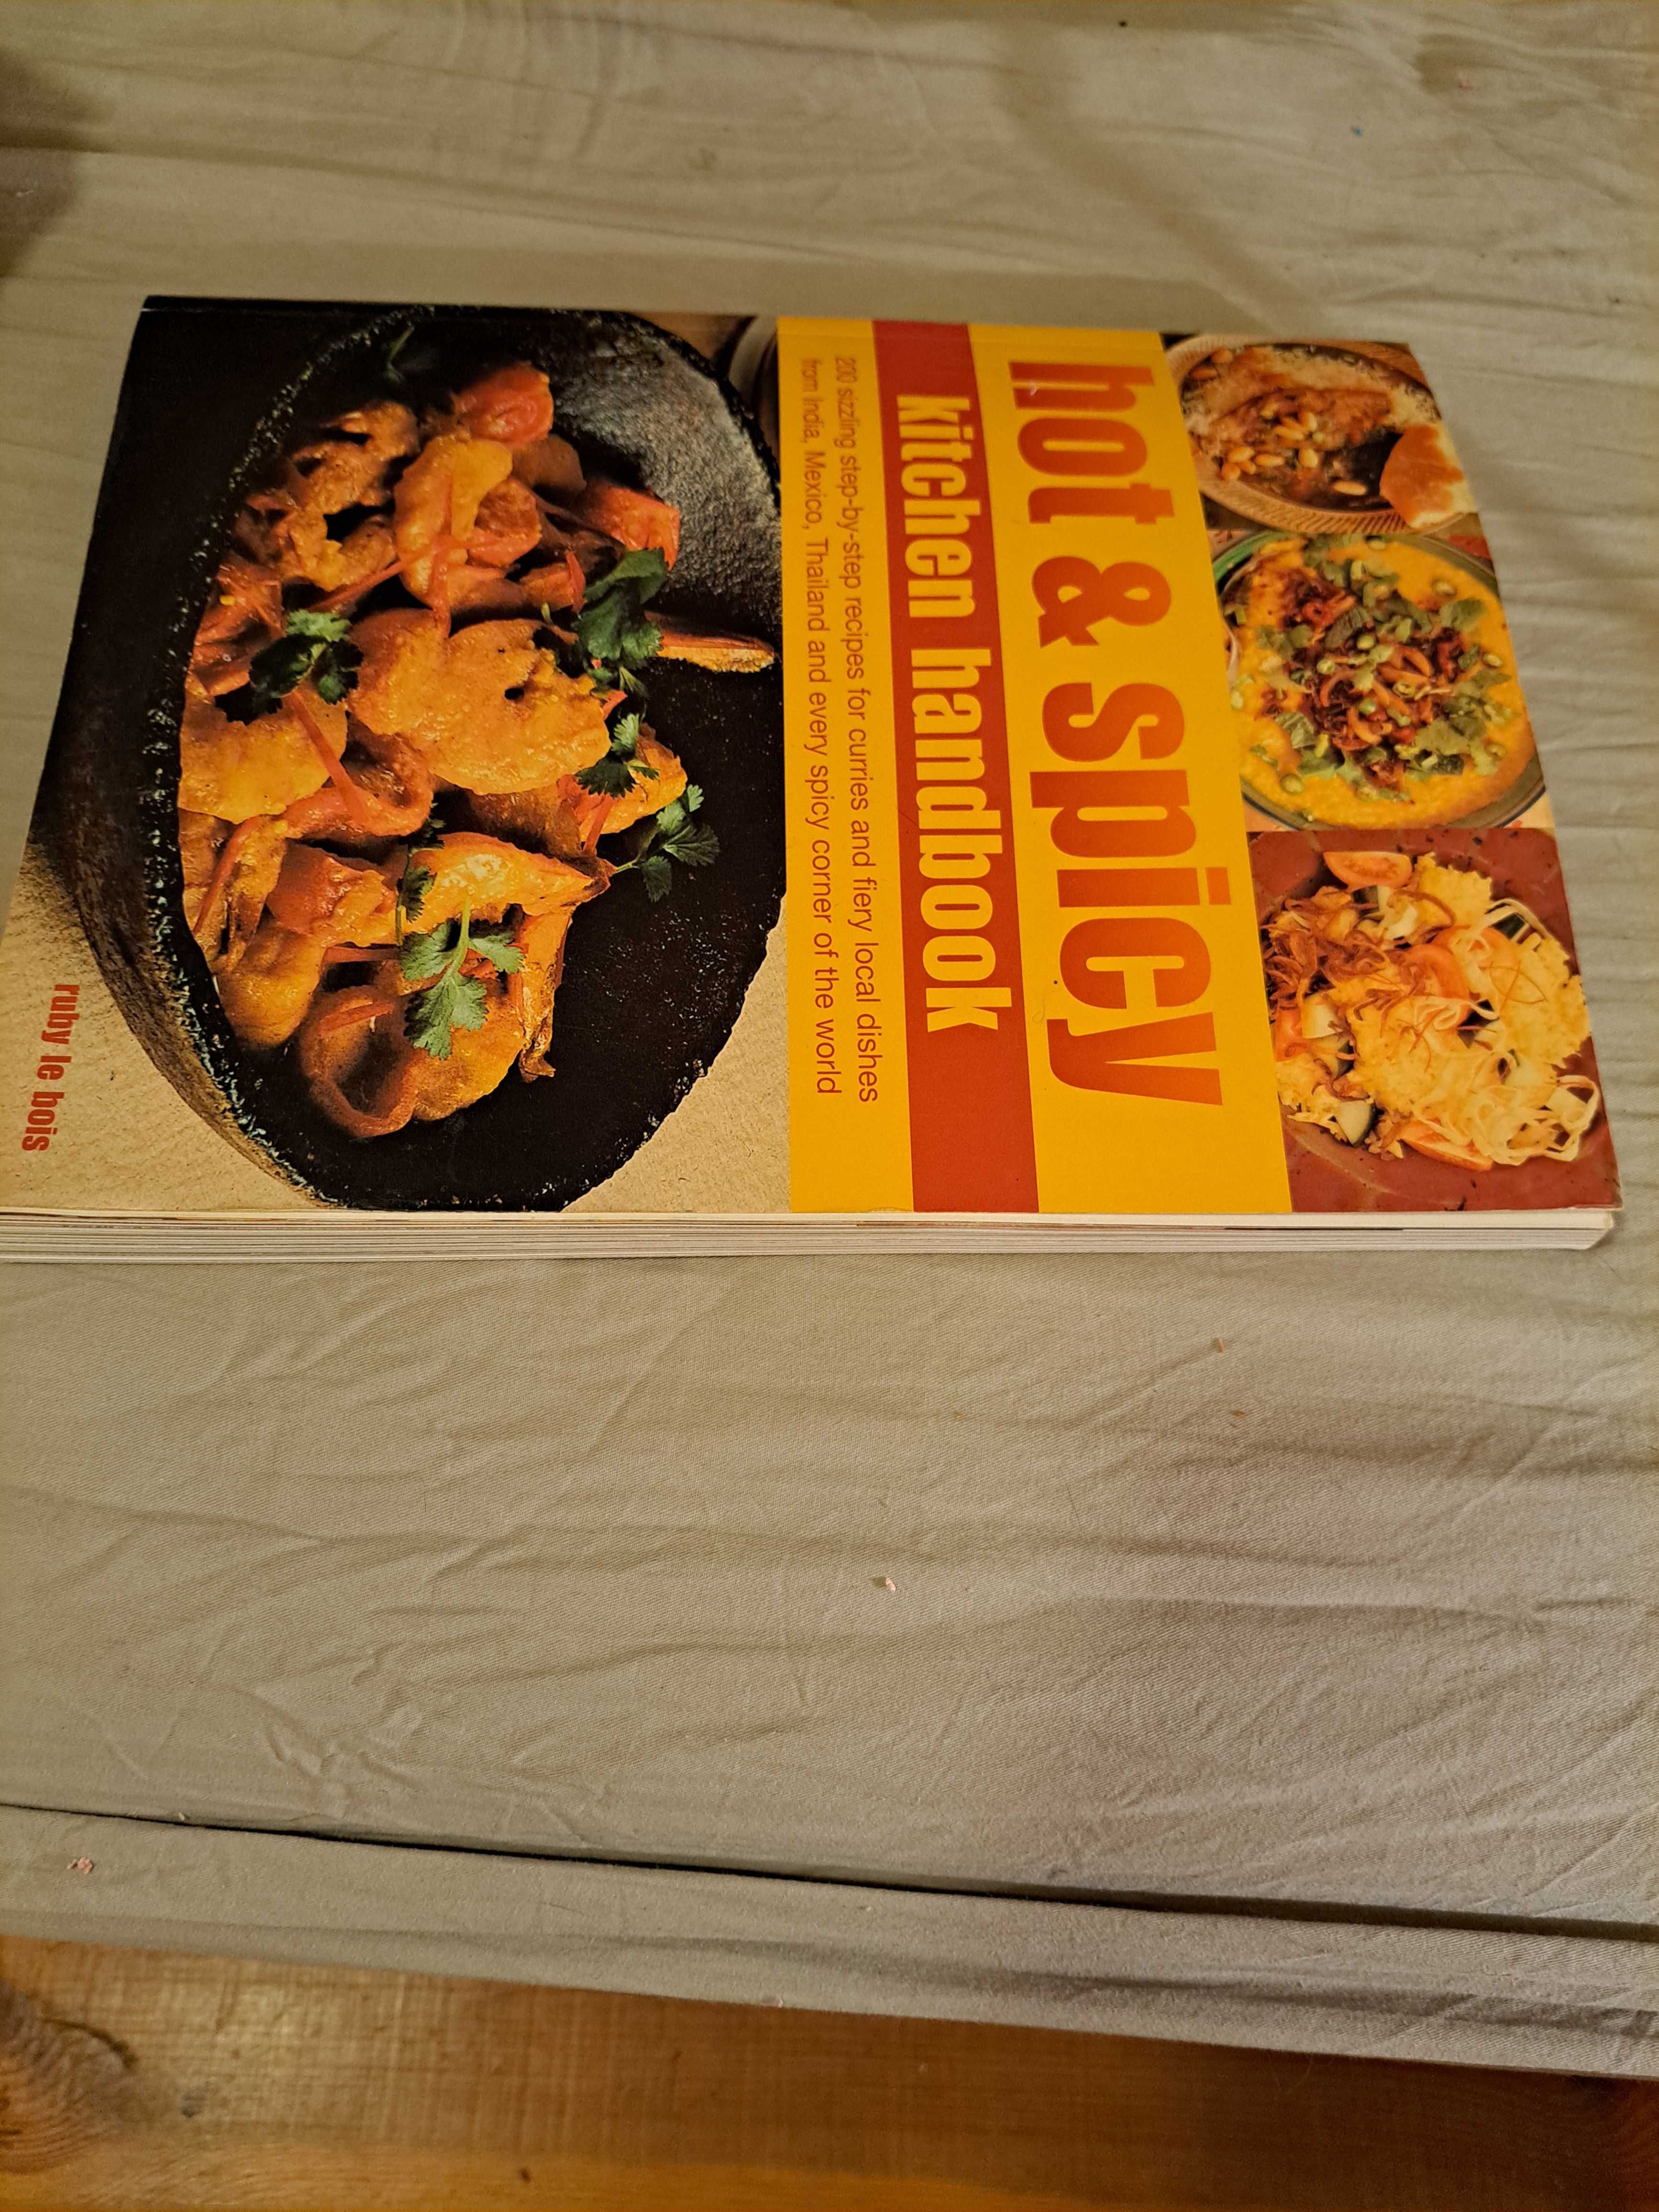 Hot & spicy kichen handbook